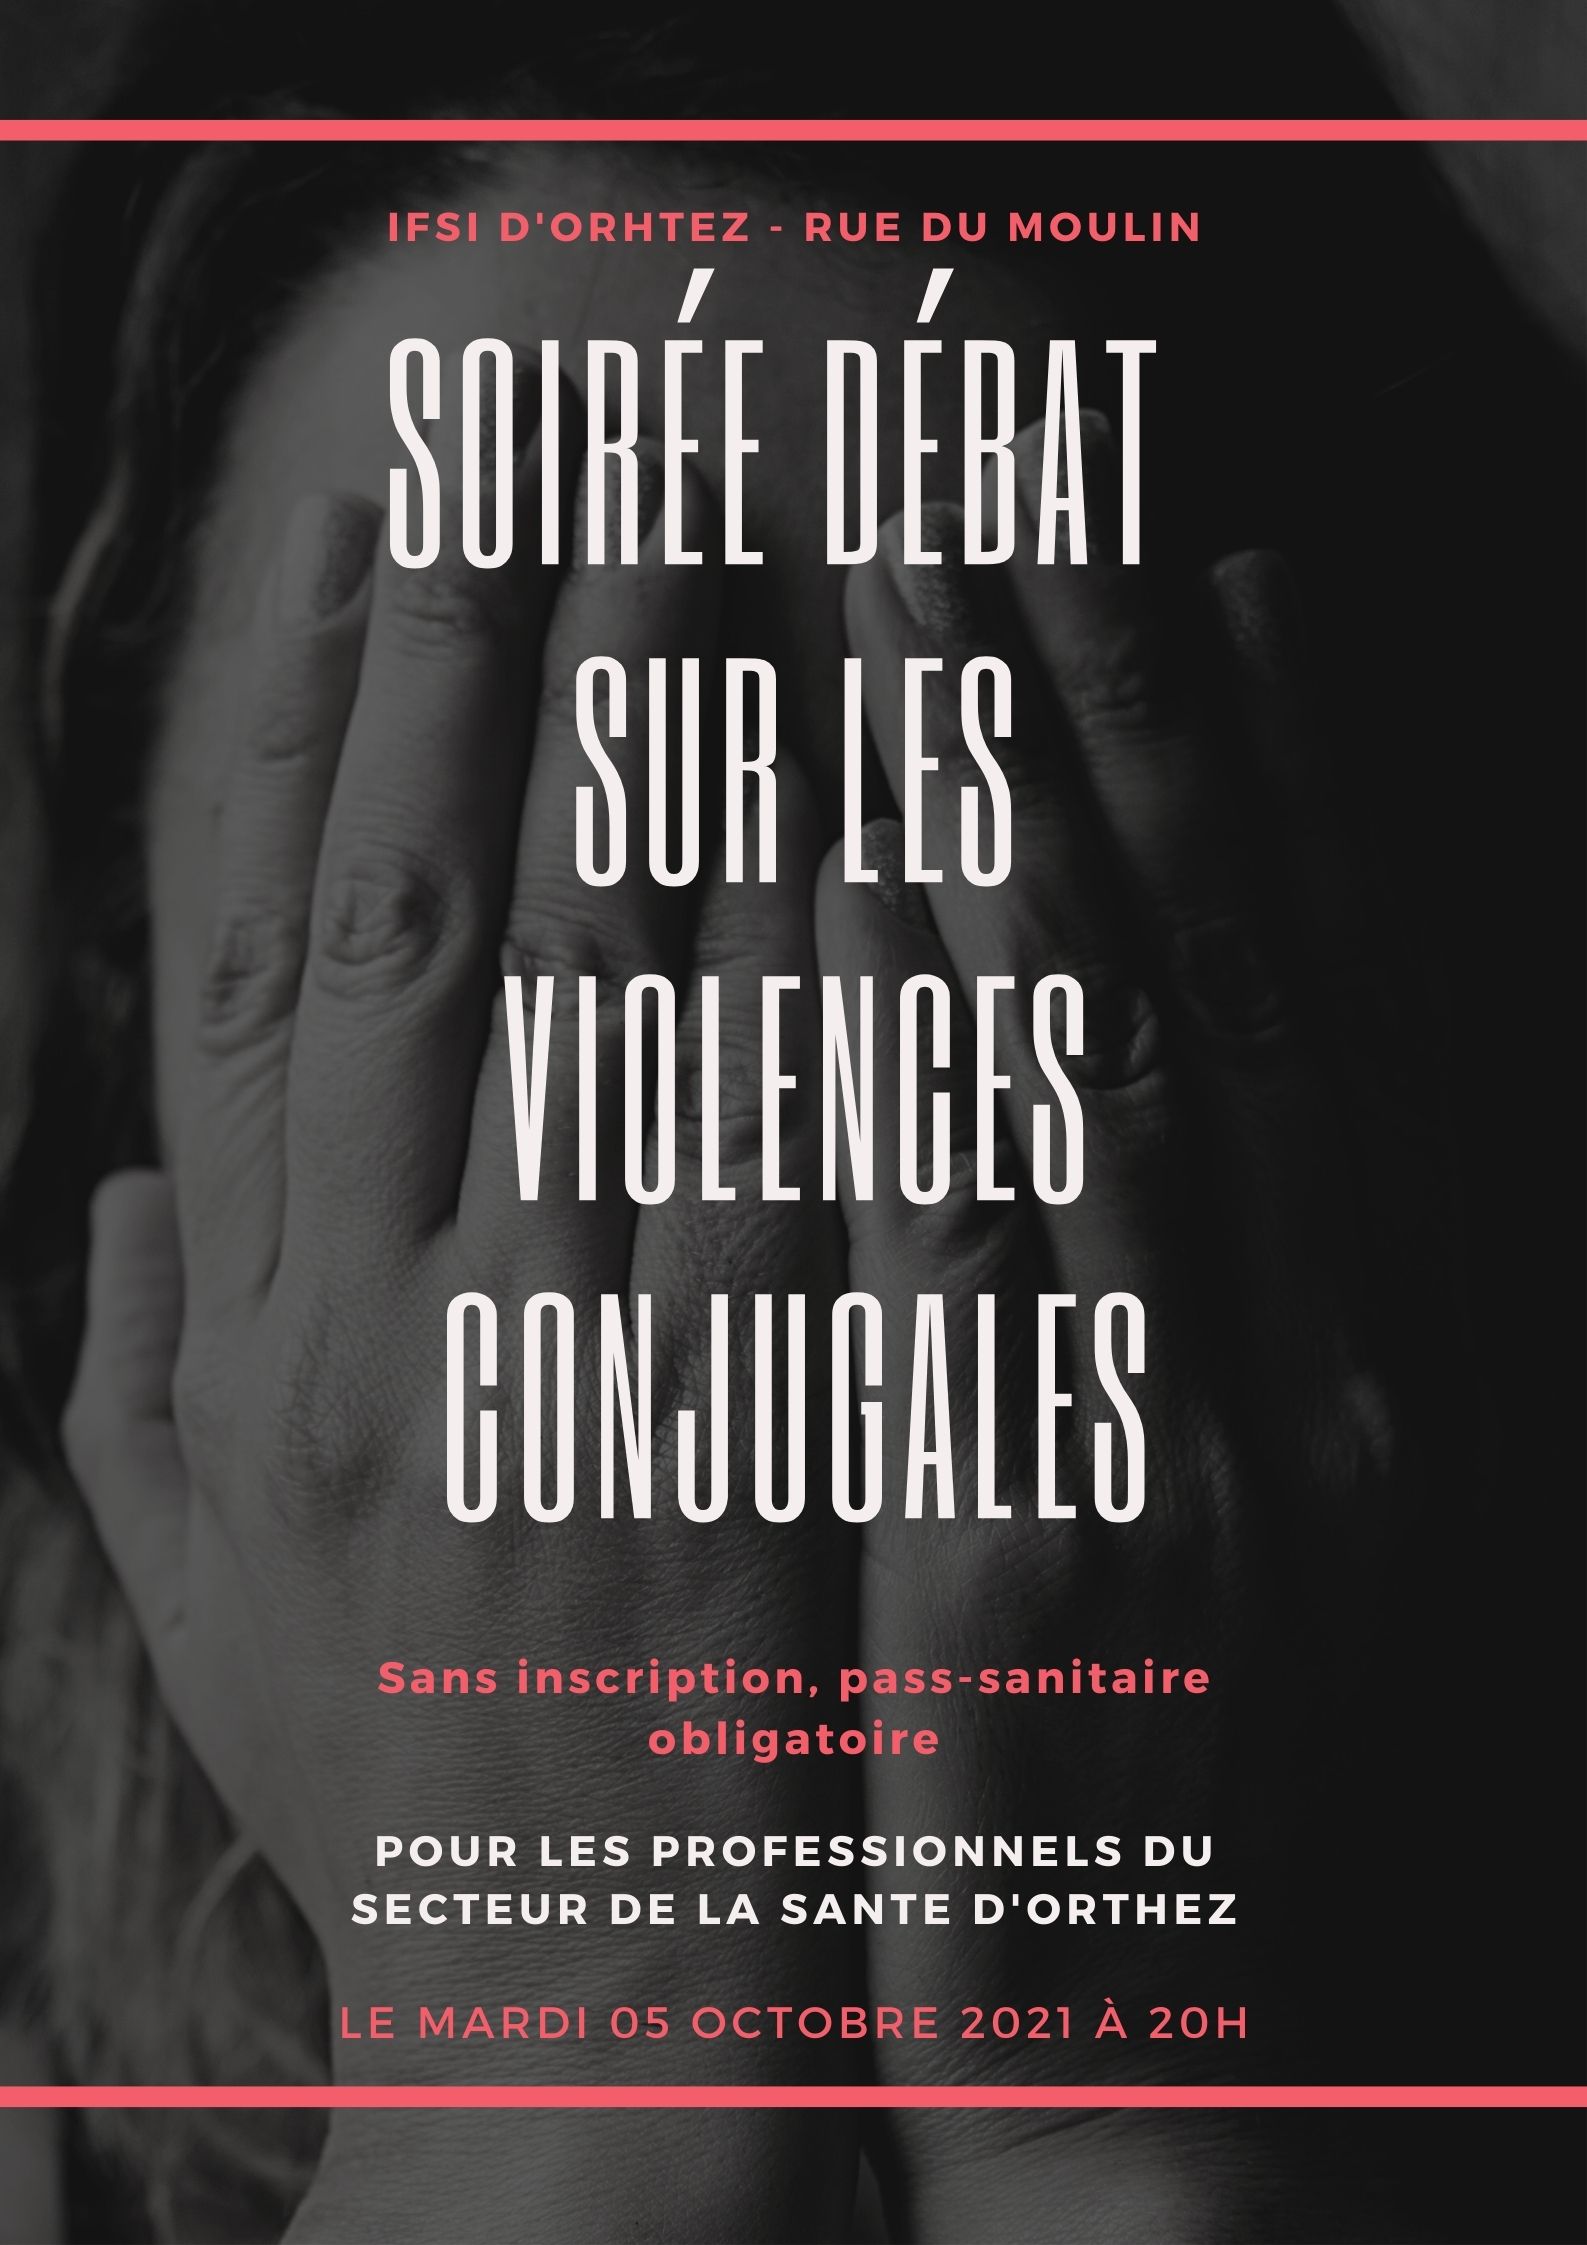 Affiche de la soirée débat sur les violences conjugales, octobre 2021